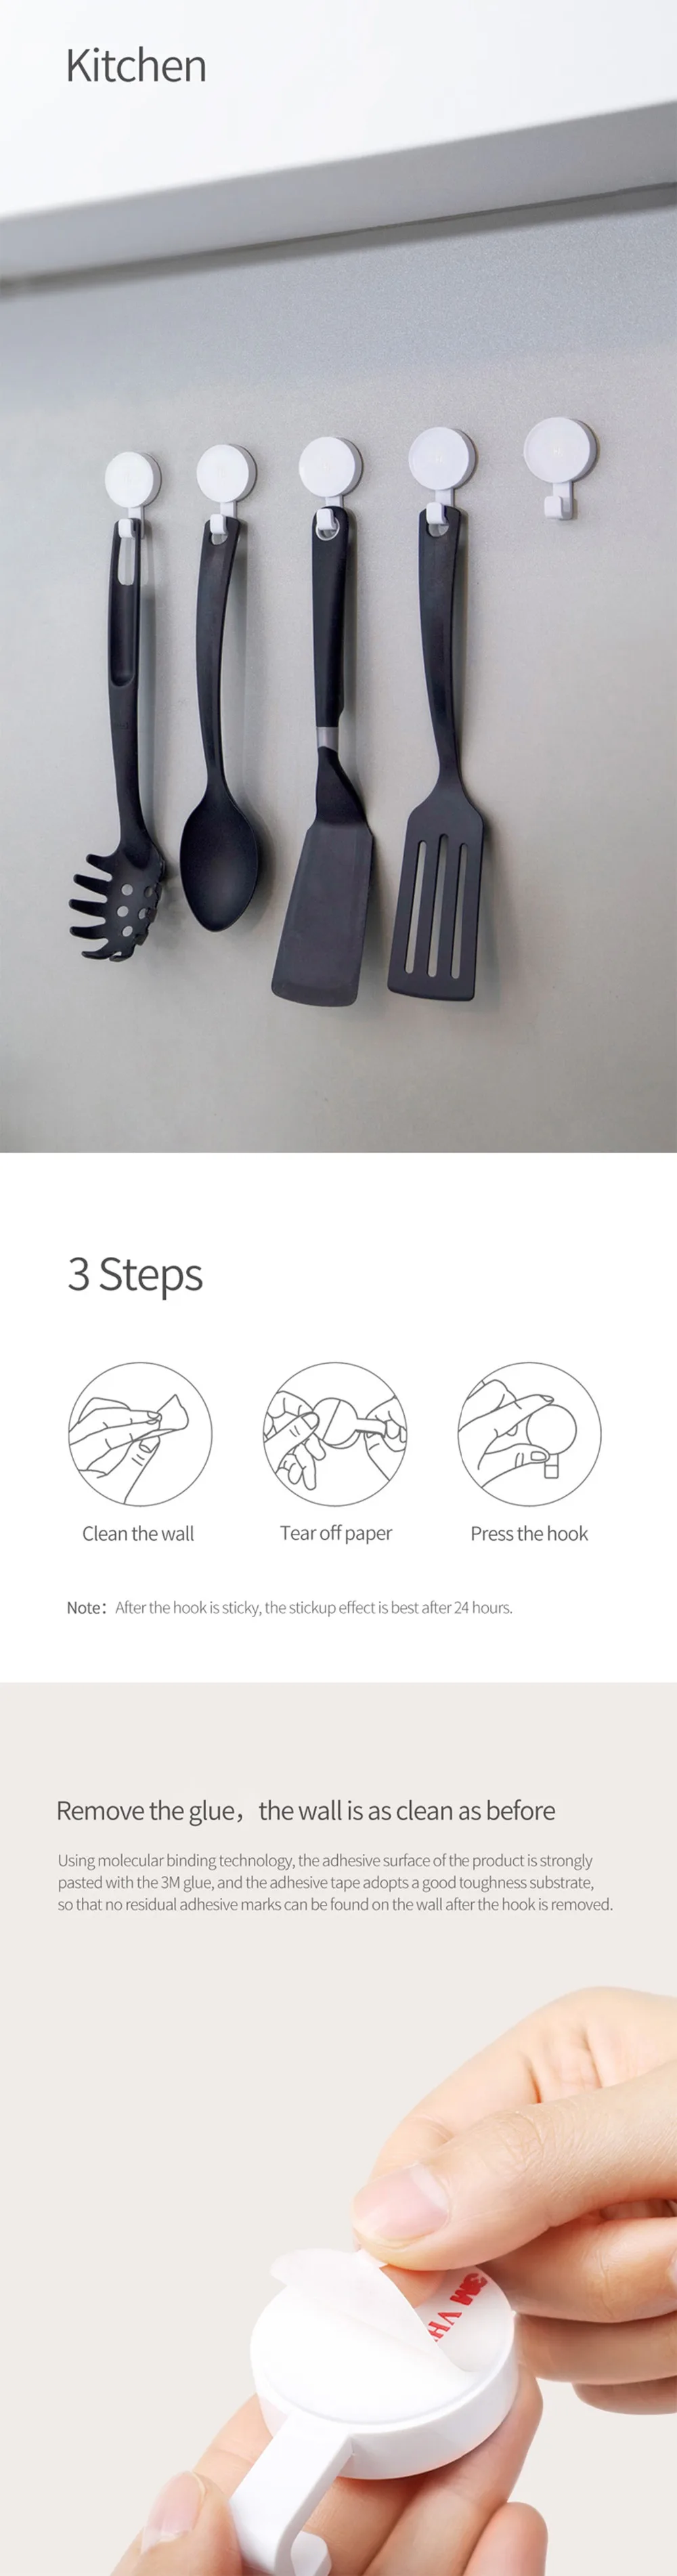 Xiaomi mijia HL настенный крючок для спальни кухонные настенные крючки 3 кг Максимальная нагрузка для умного дома xiaomi 6 в 1 Набор крепких крючков Крючок для мелочей